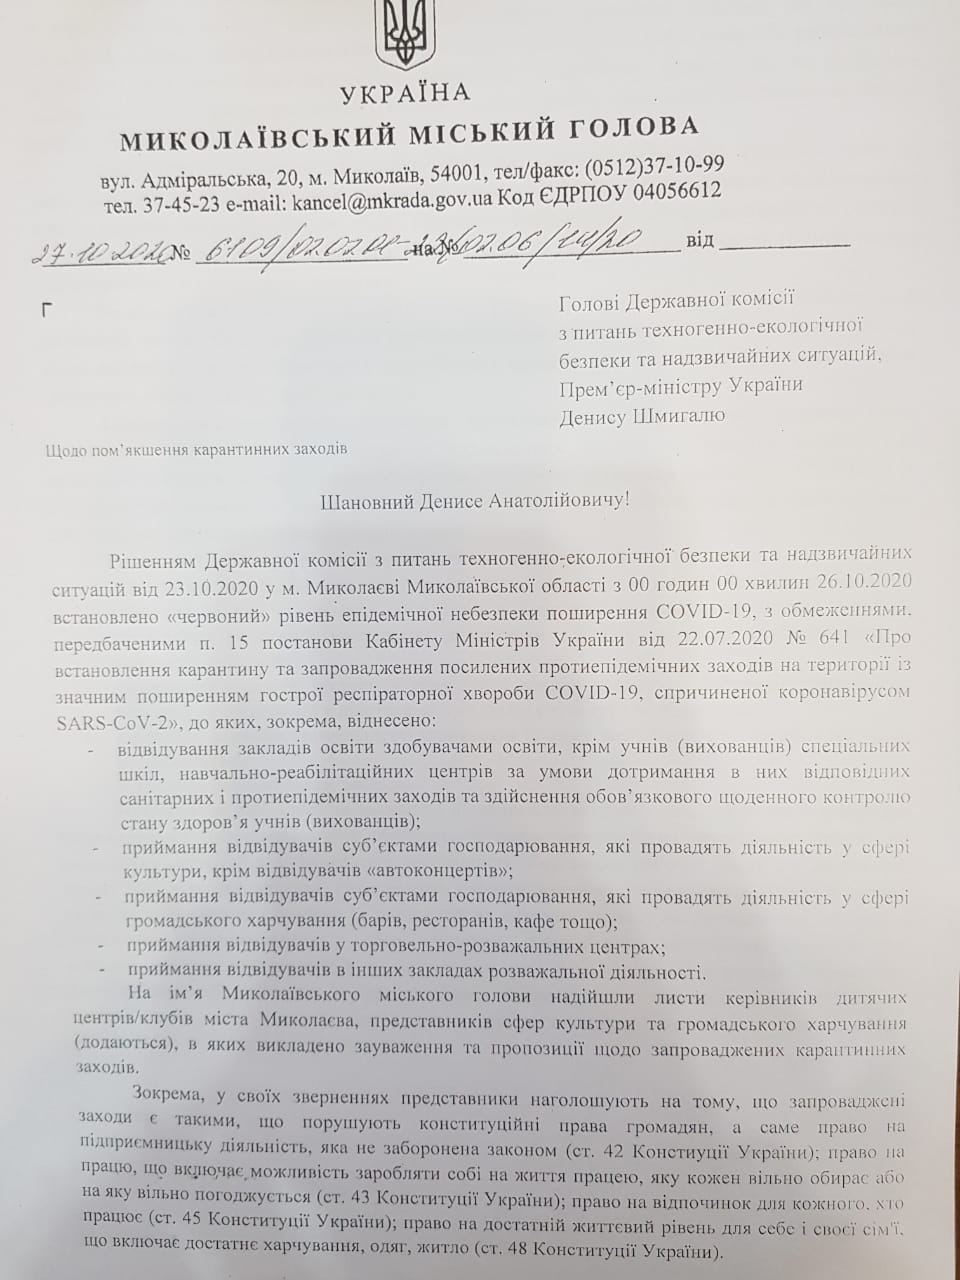 мэр Николаева просит ослабить карантинные ограничения в городе